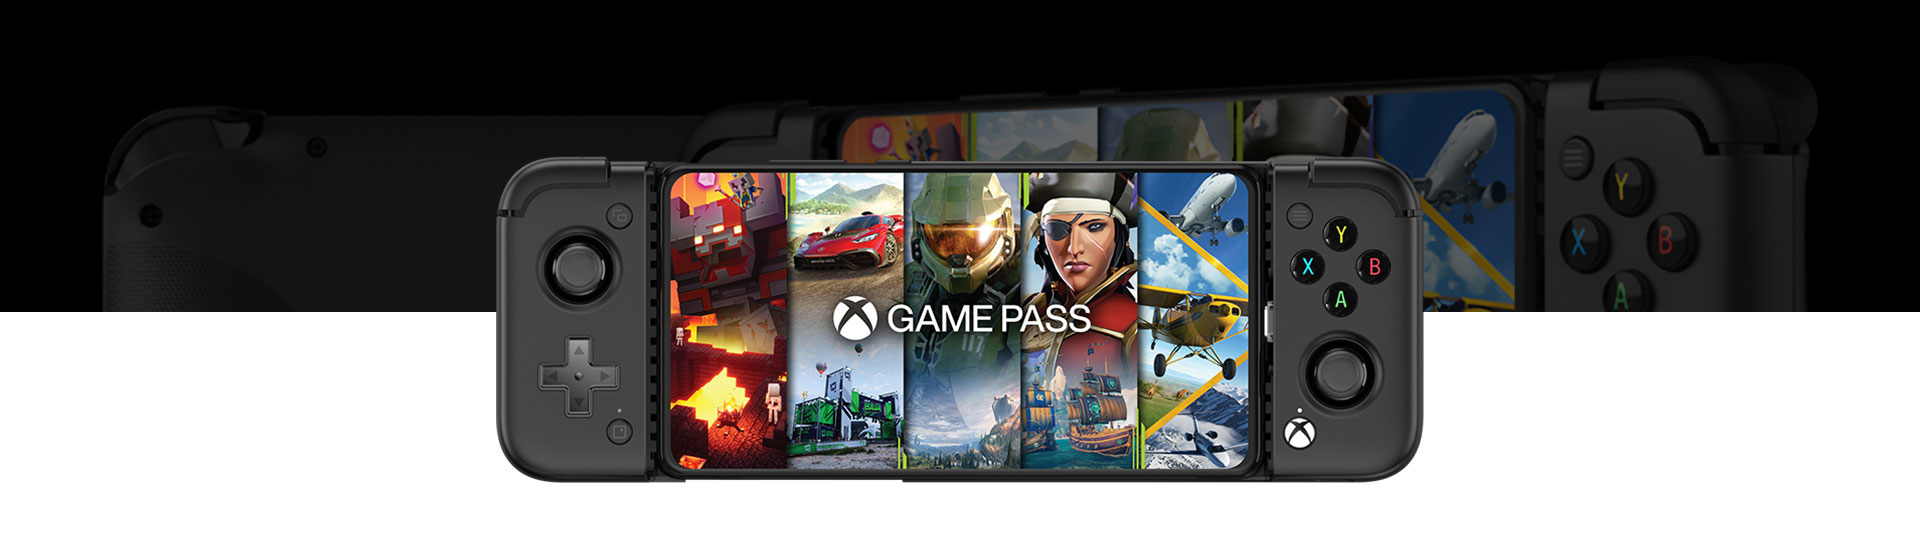 Widok z przodu na kontroler gier mobilnych GameSir X2 Pro z wypełnieniem ekranu Game Pass